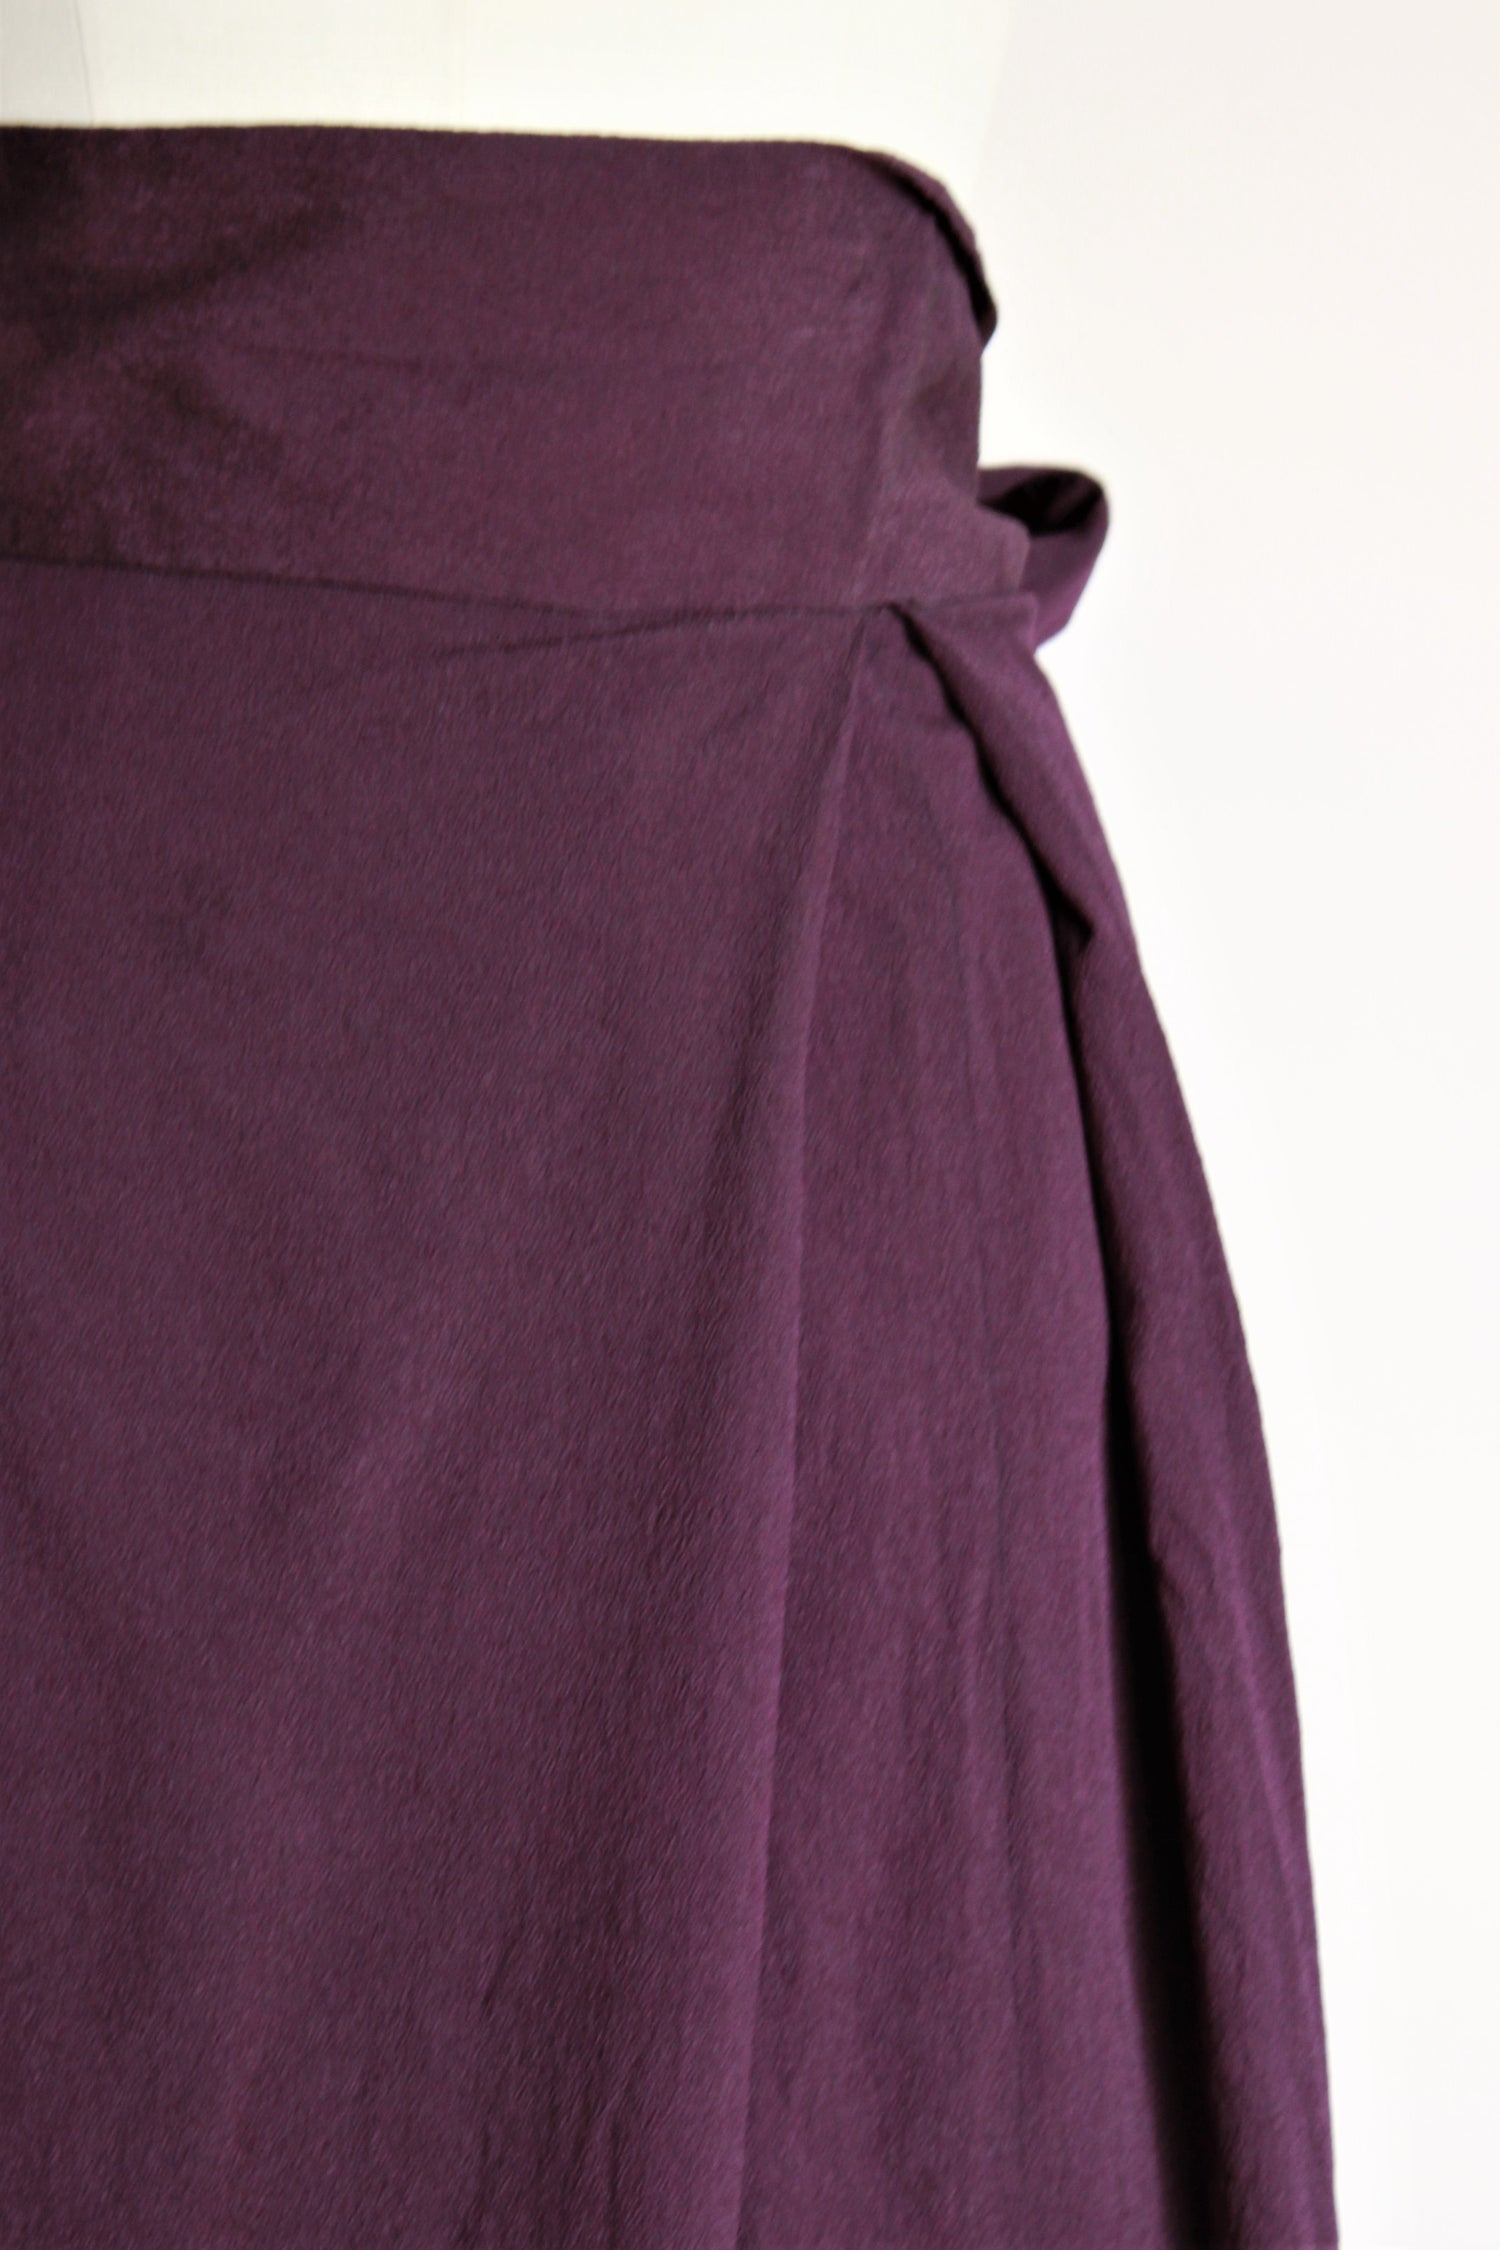 Vintage 1940s Purple Rayon Wrap Skirt – Toadstool Farm Vintage